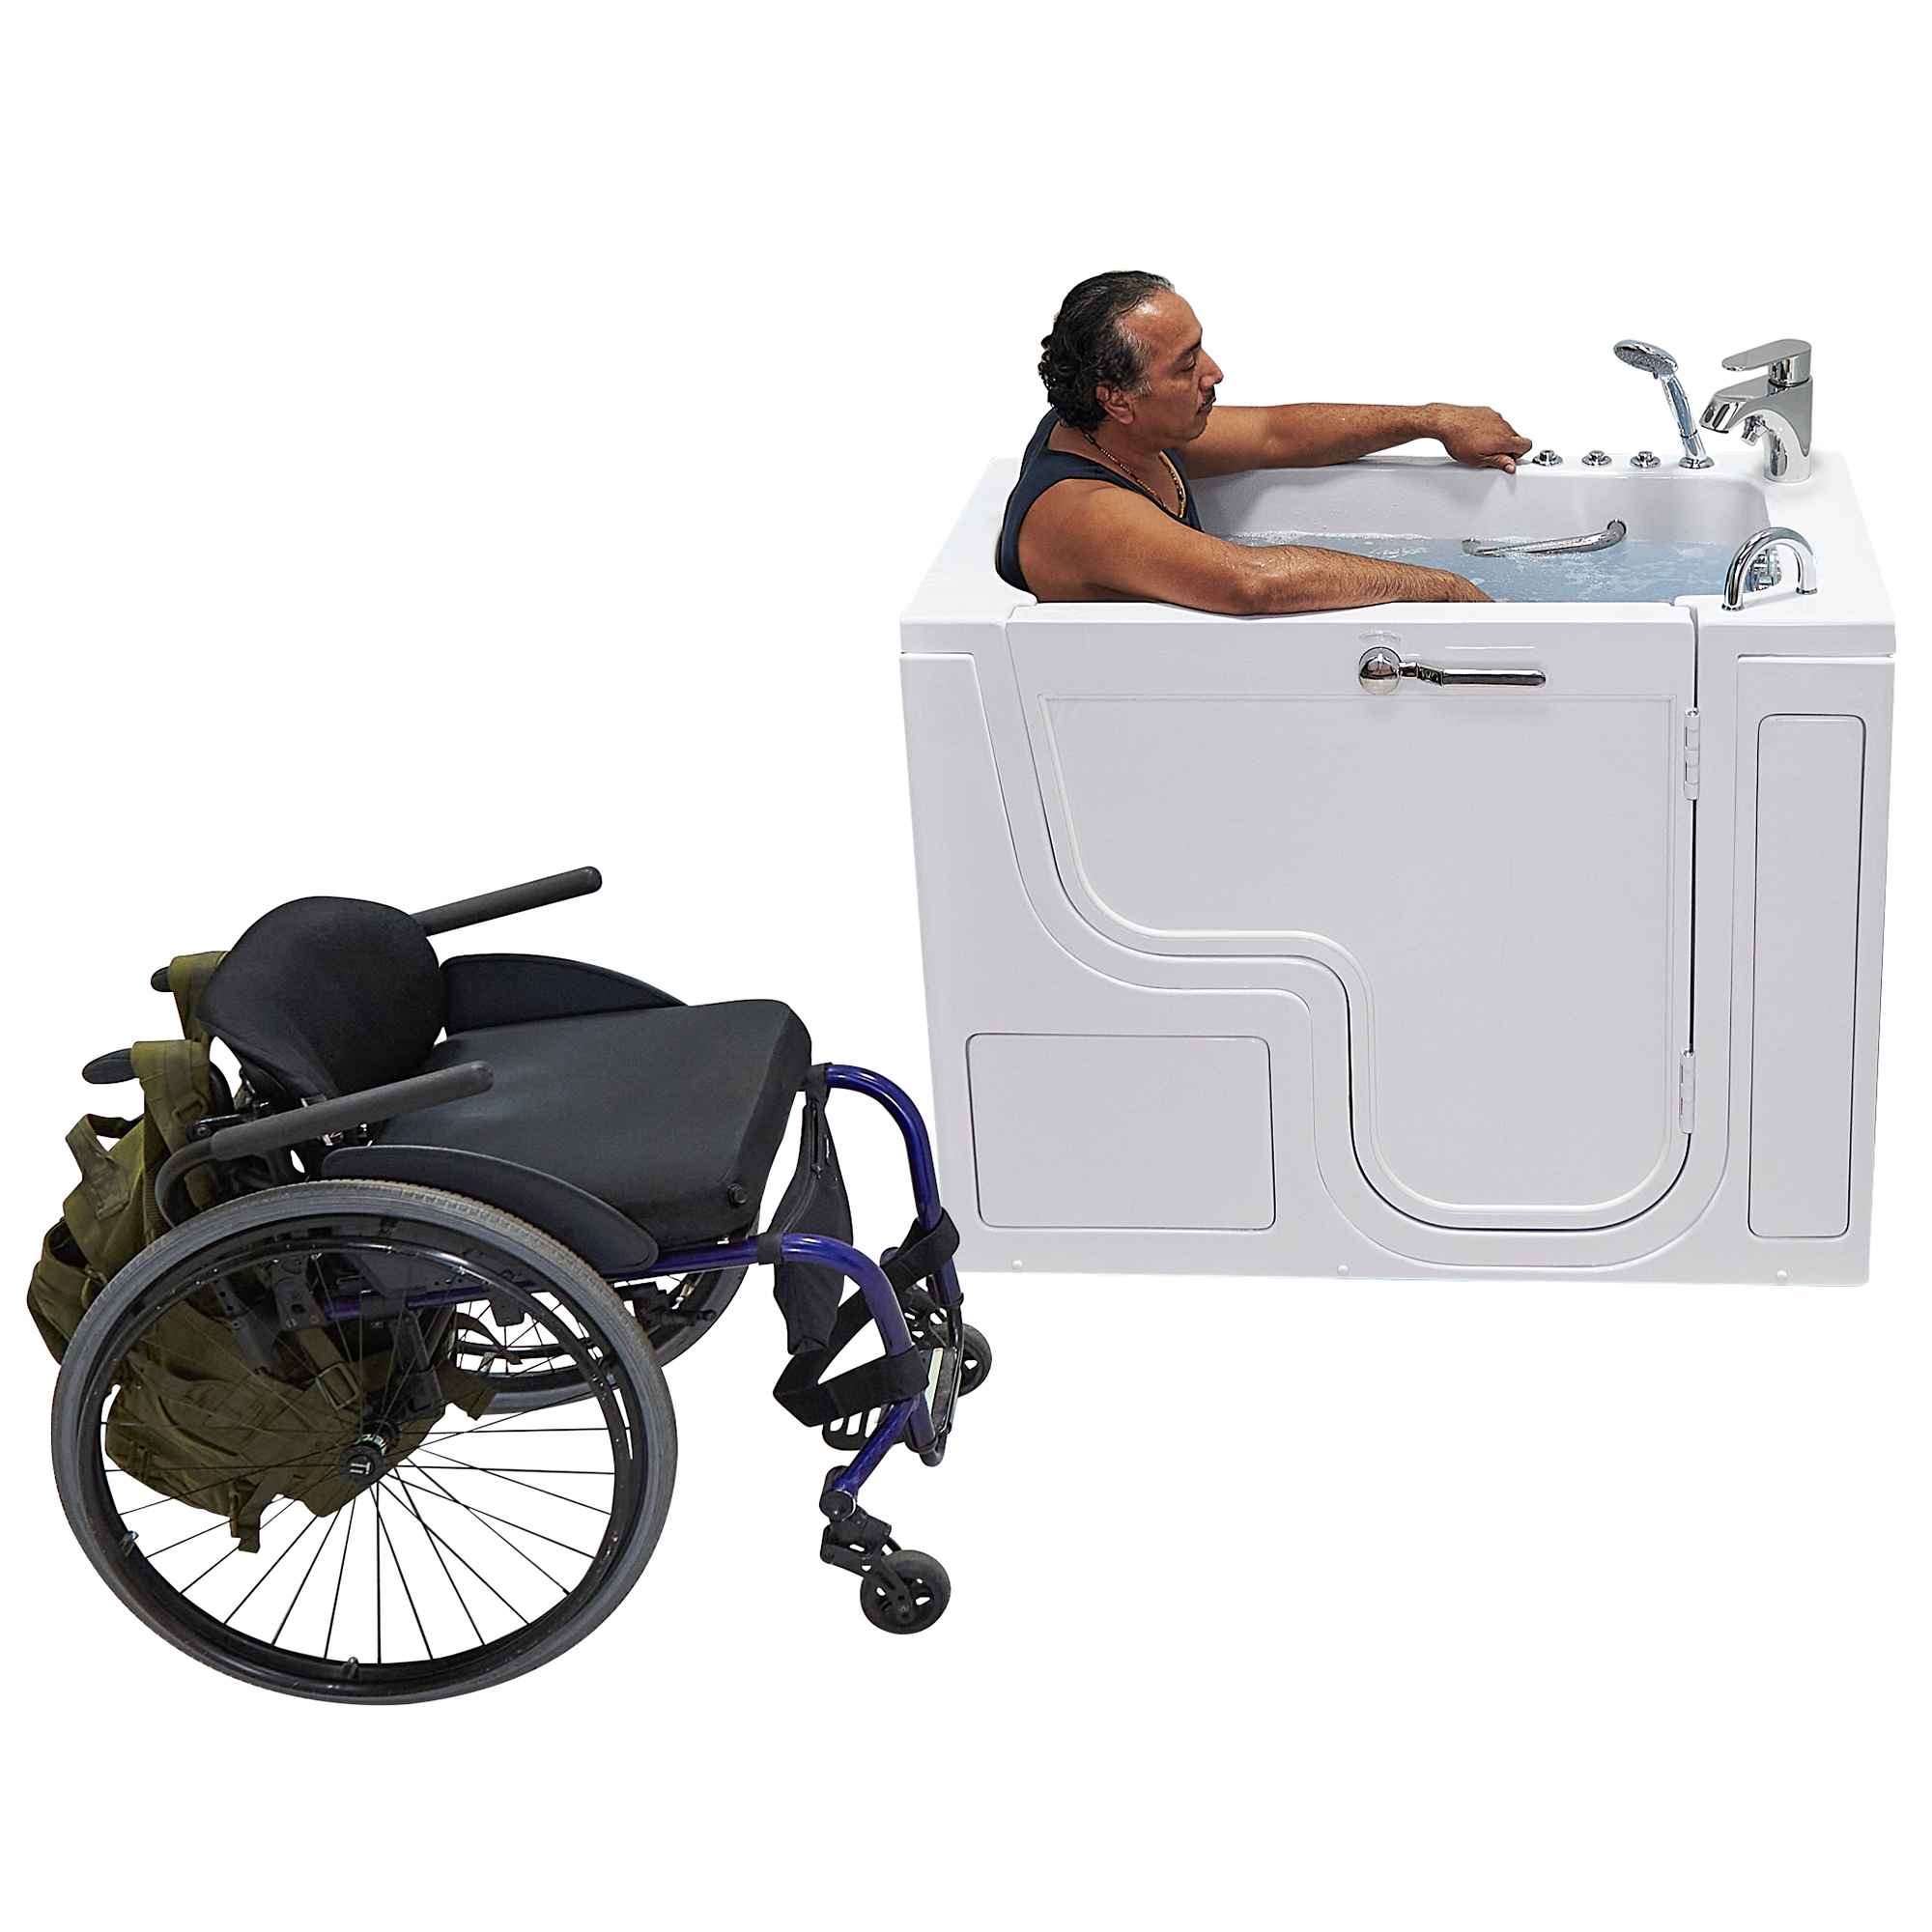 Ella Wheelchair Transfer 30"x52" Acrylic Air and Hydro Massage Walk-In Bathtub with Outward Swing Door, 2 Piece Fast Fill Faucet, 2" Dual Drain Bath Tub Ella's Bubbles   